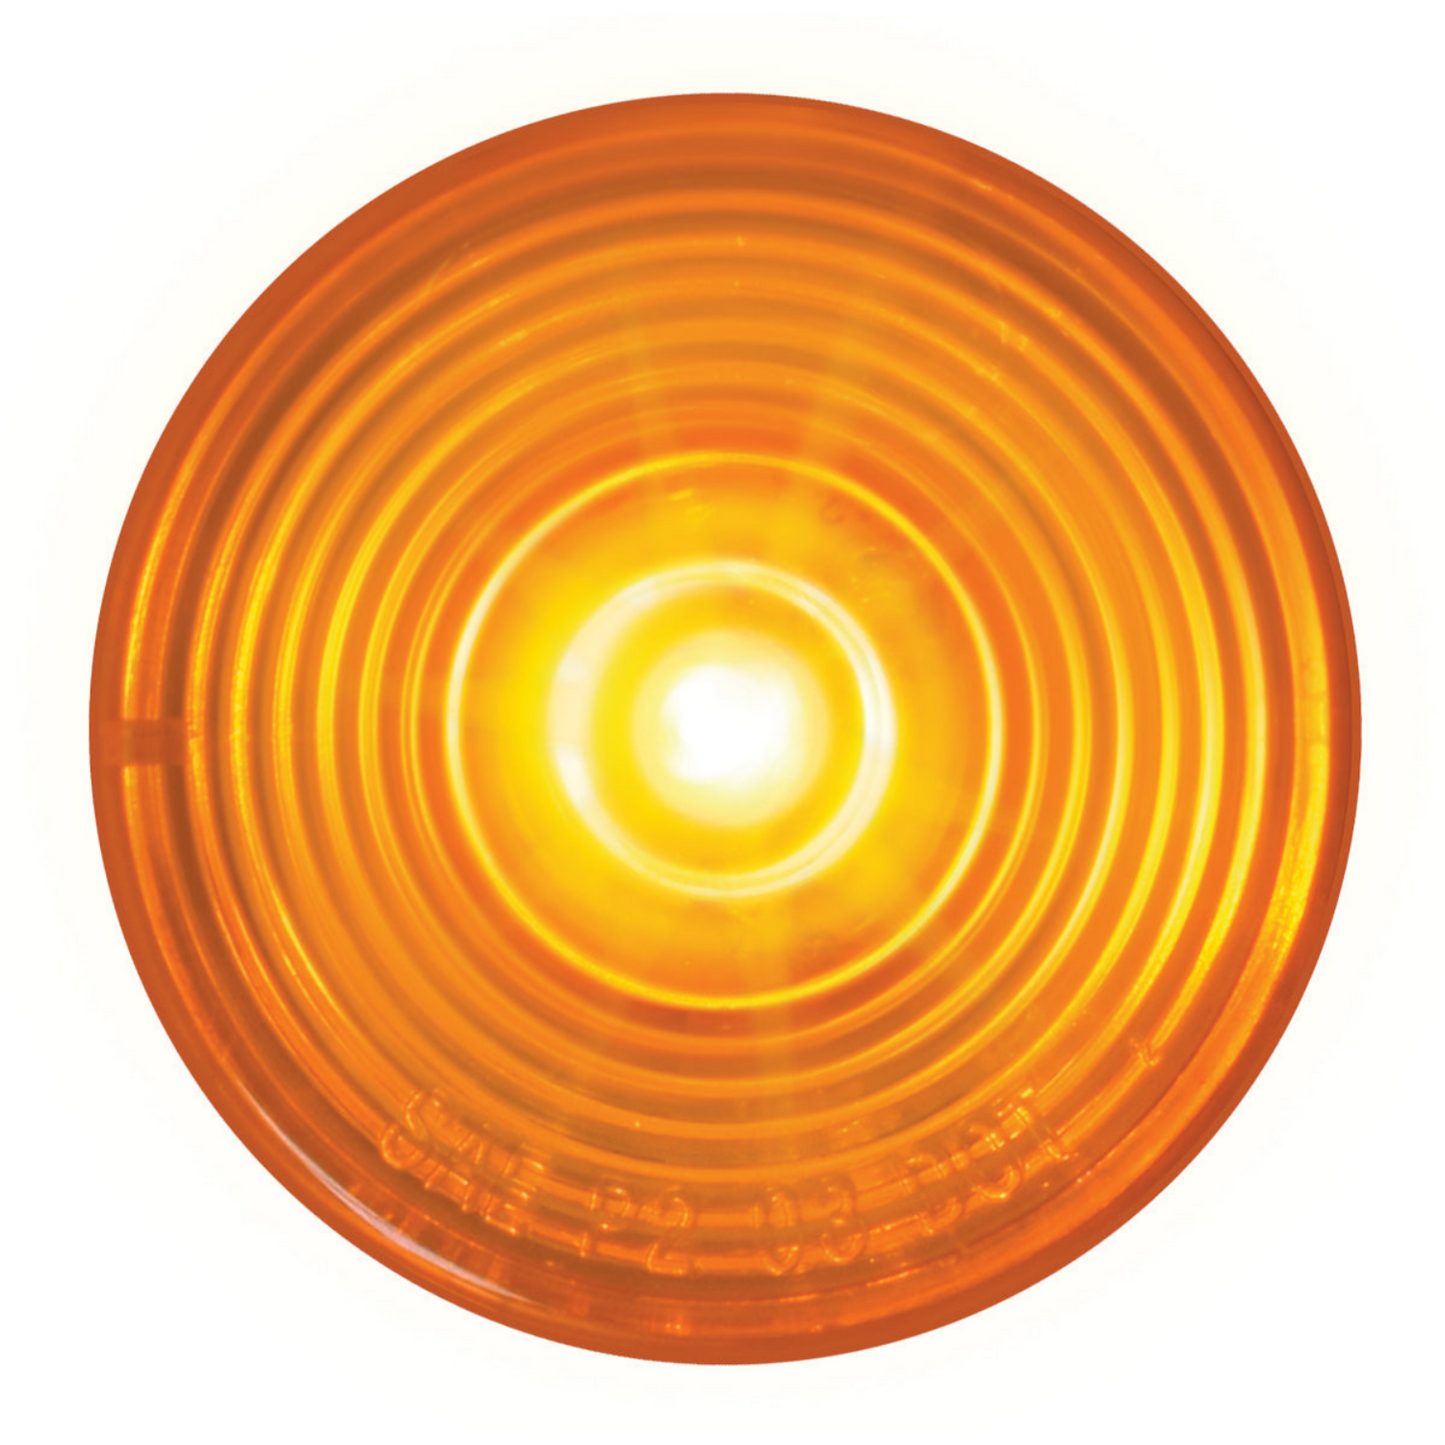 2′′ Single High Power 1 LED Light in Amber